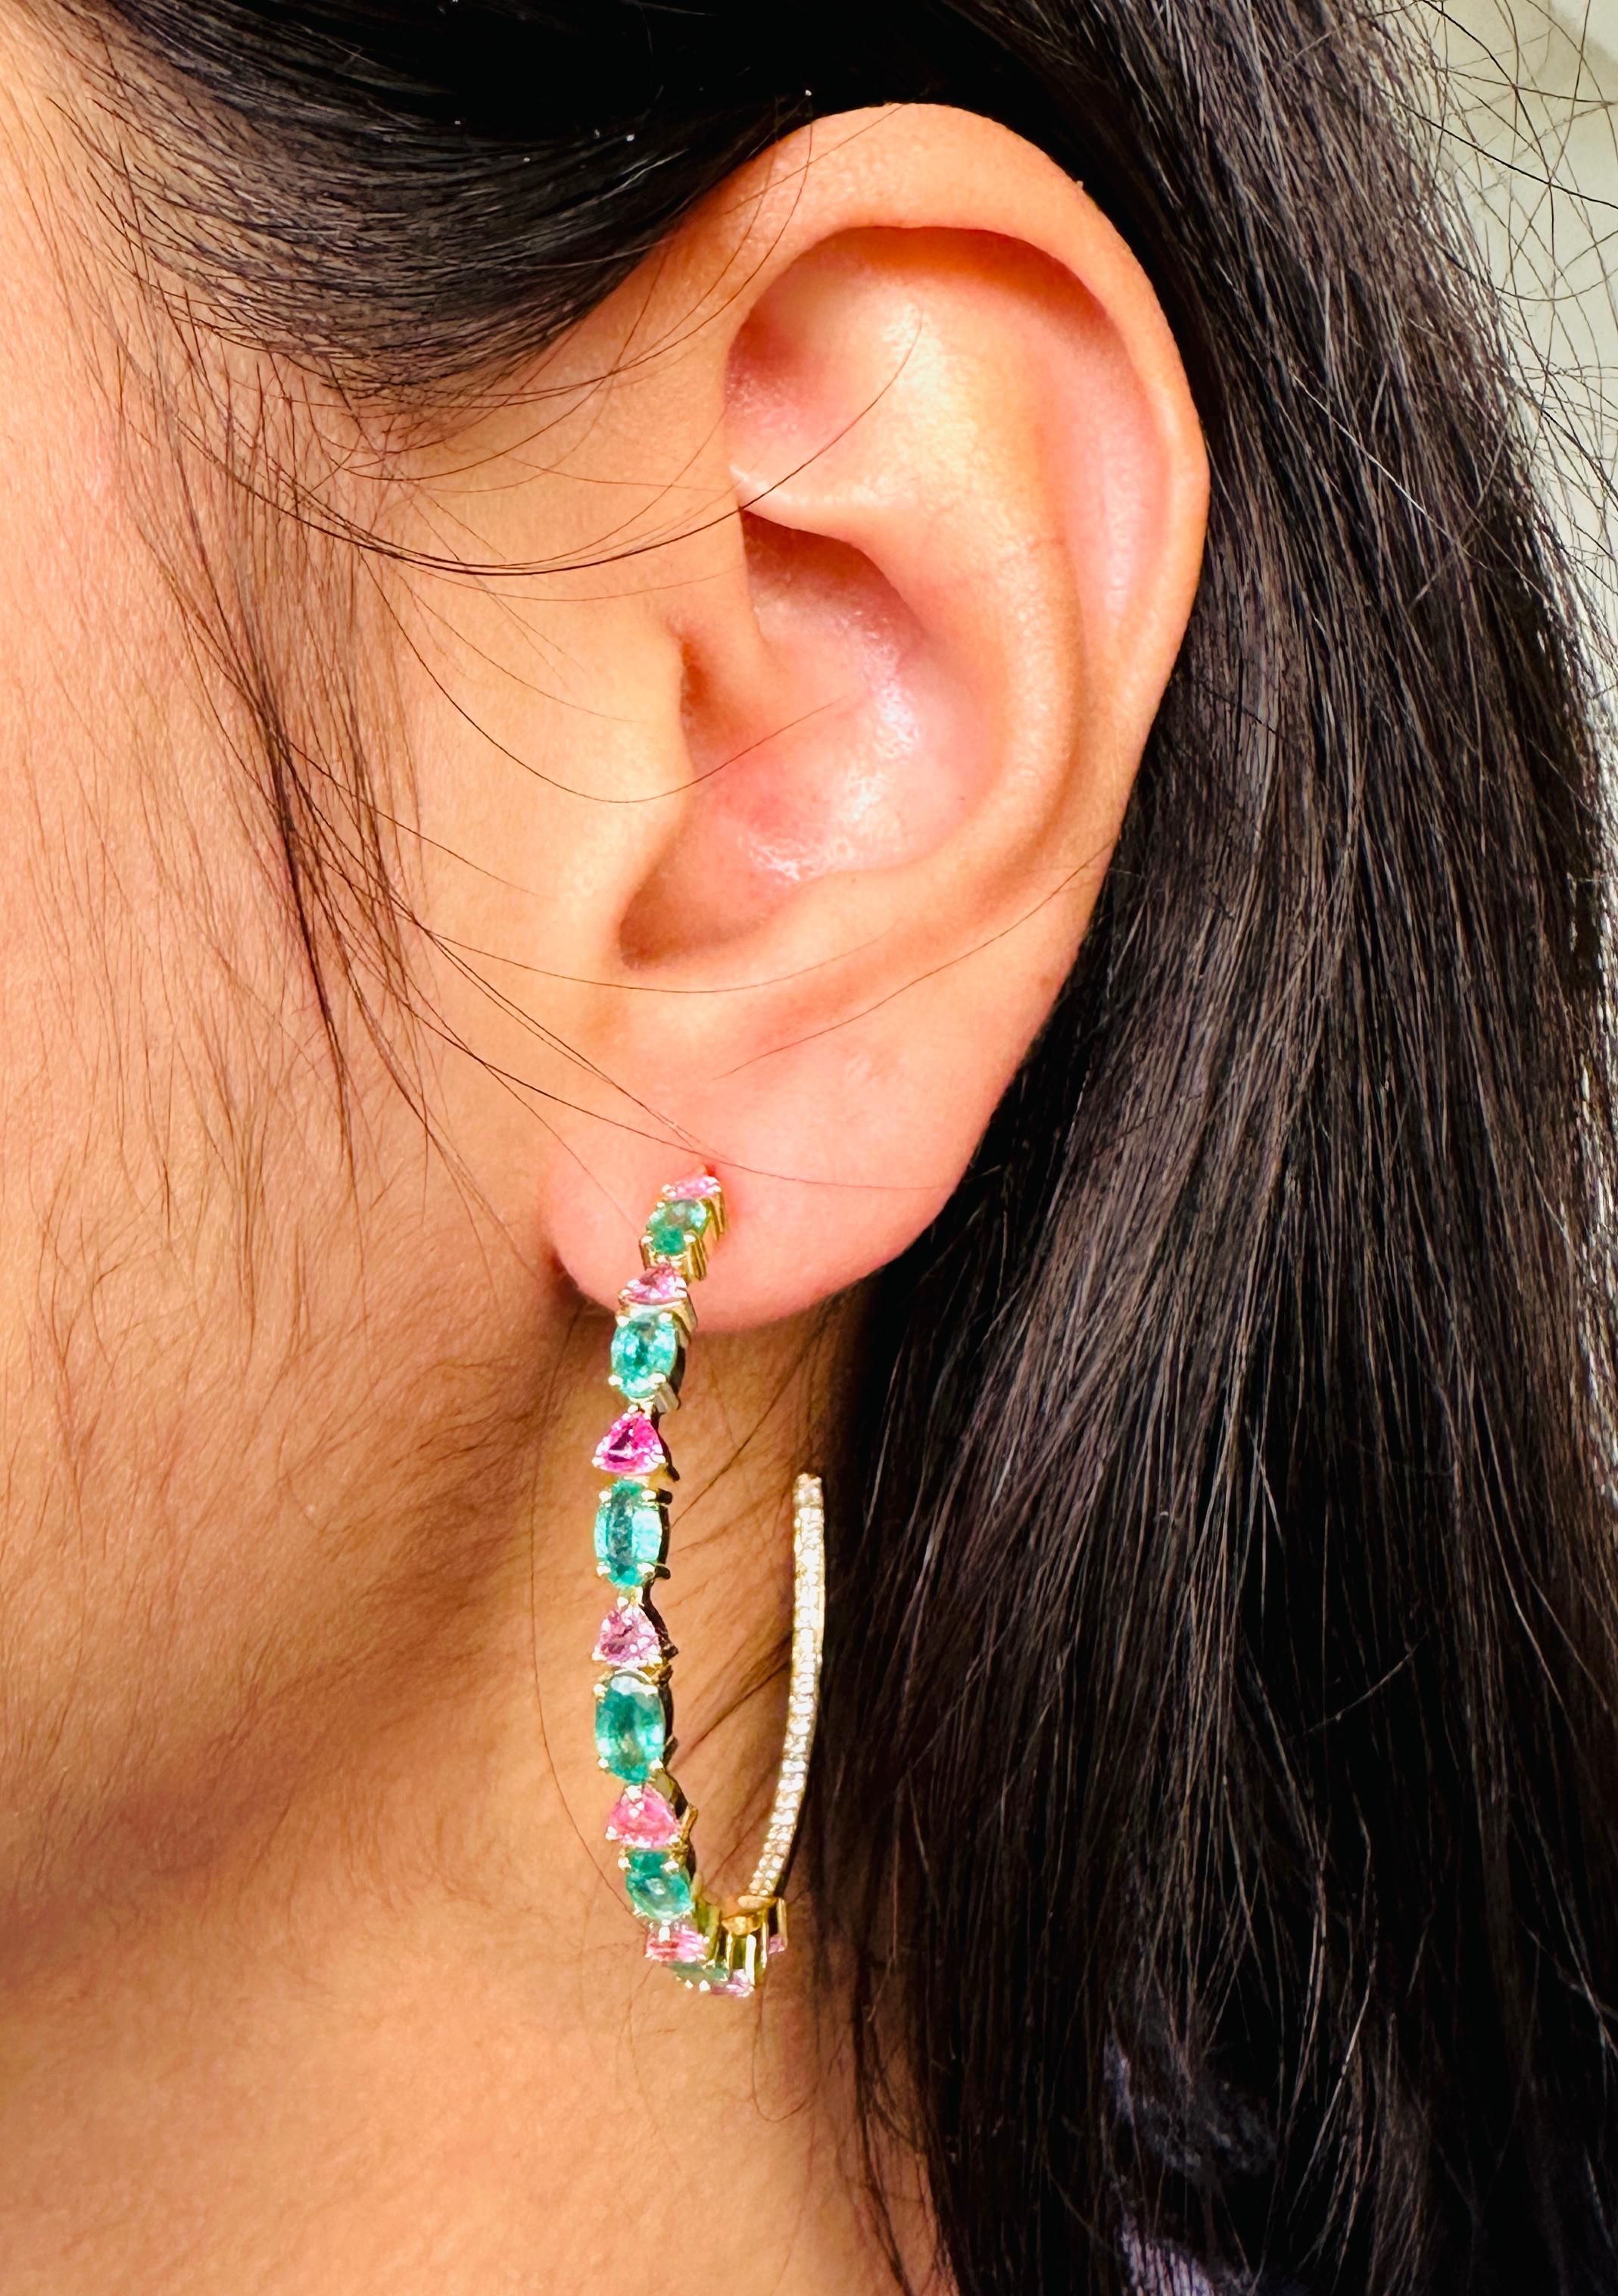 Boucles d'oreilles en or 14 carats avec diamants fins, émeraudes et saphirs roses, pour un look qui en impose. Vous aurez besoin de boucles d'oreilles ouvertes pour mettre en valeur votre look. Ces boucles d'oreilles créent un look étincelant et